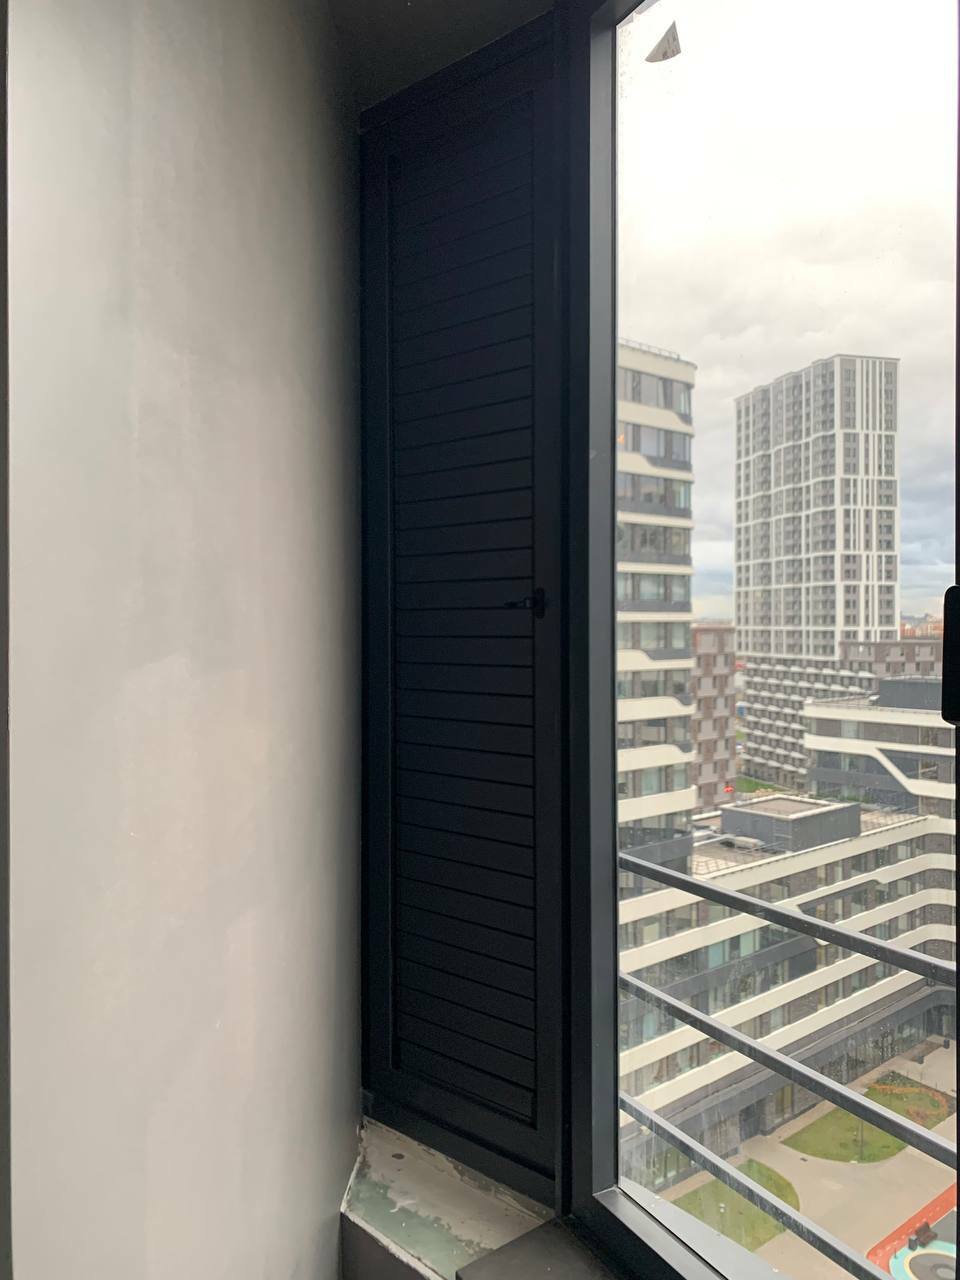 Замена стеклопакета на регулируемую вентрешетку на балконе